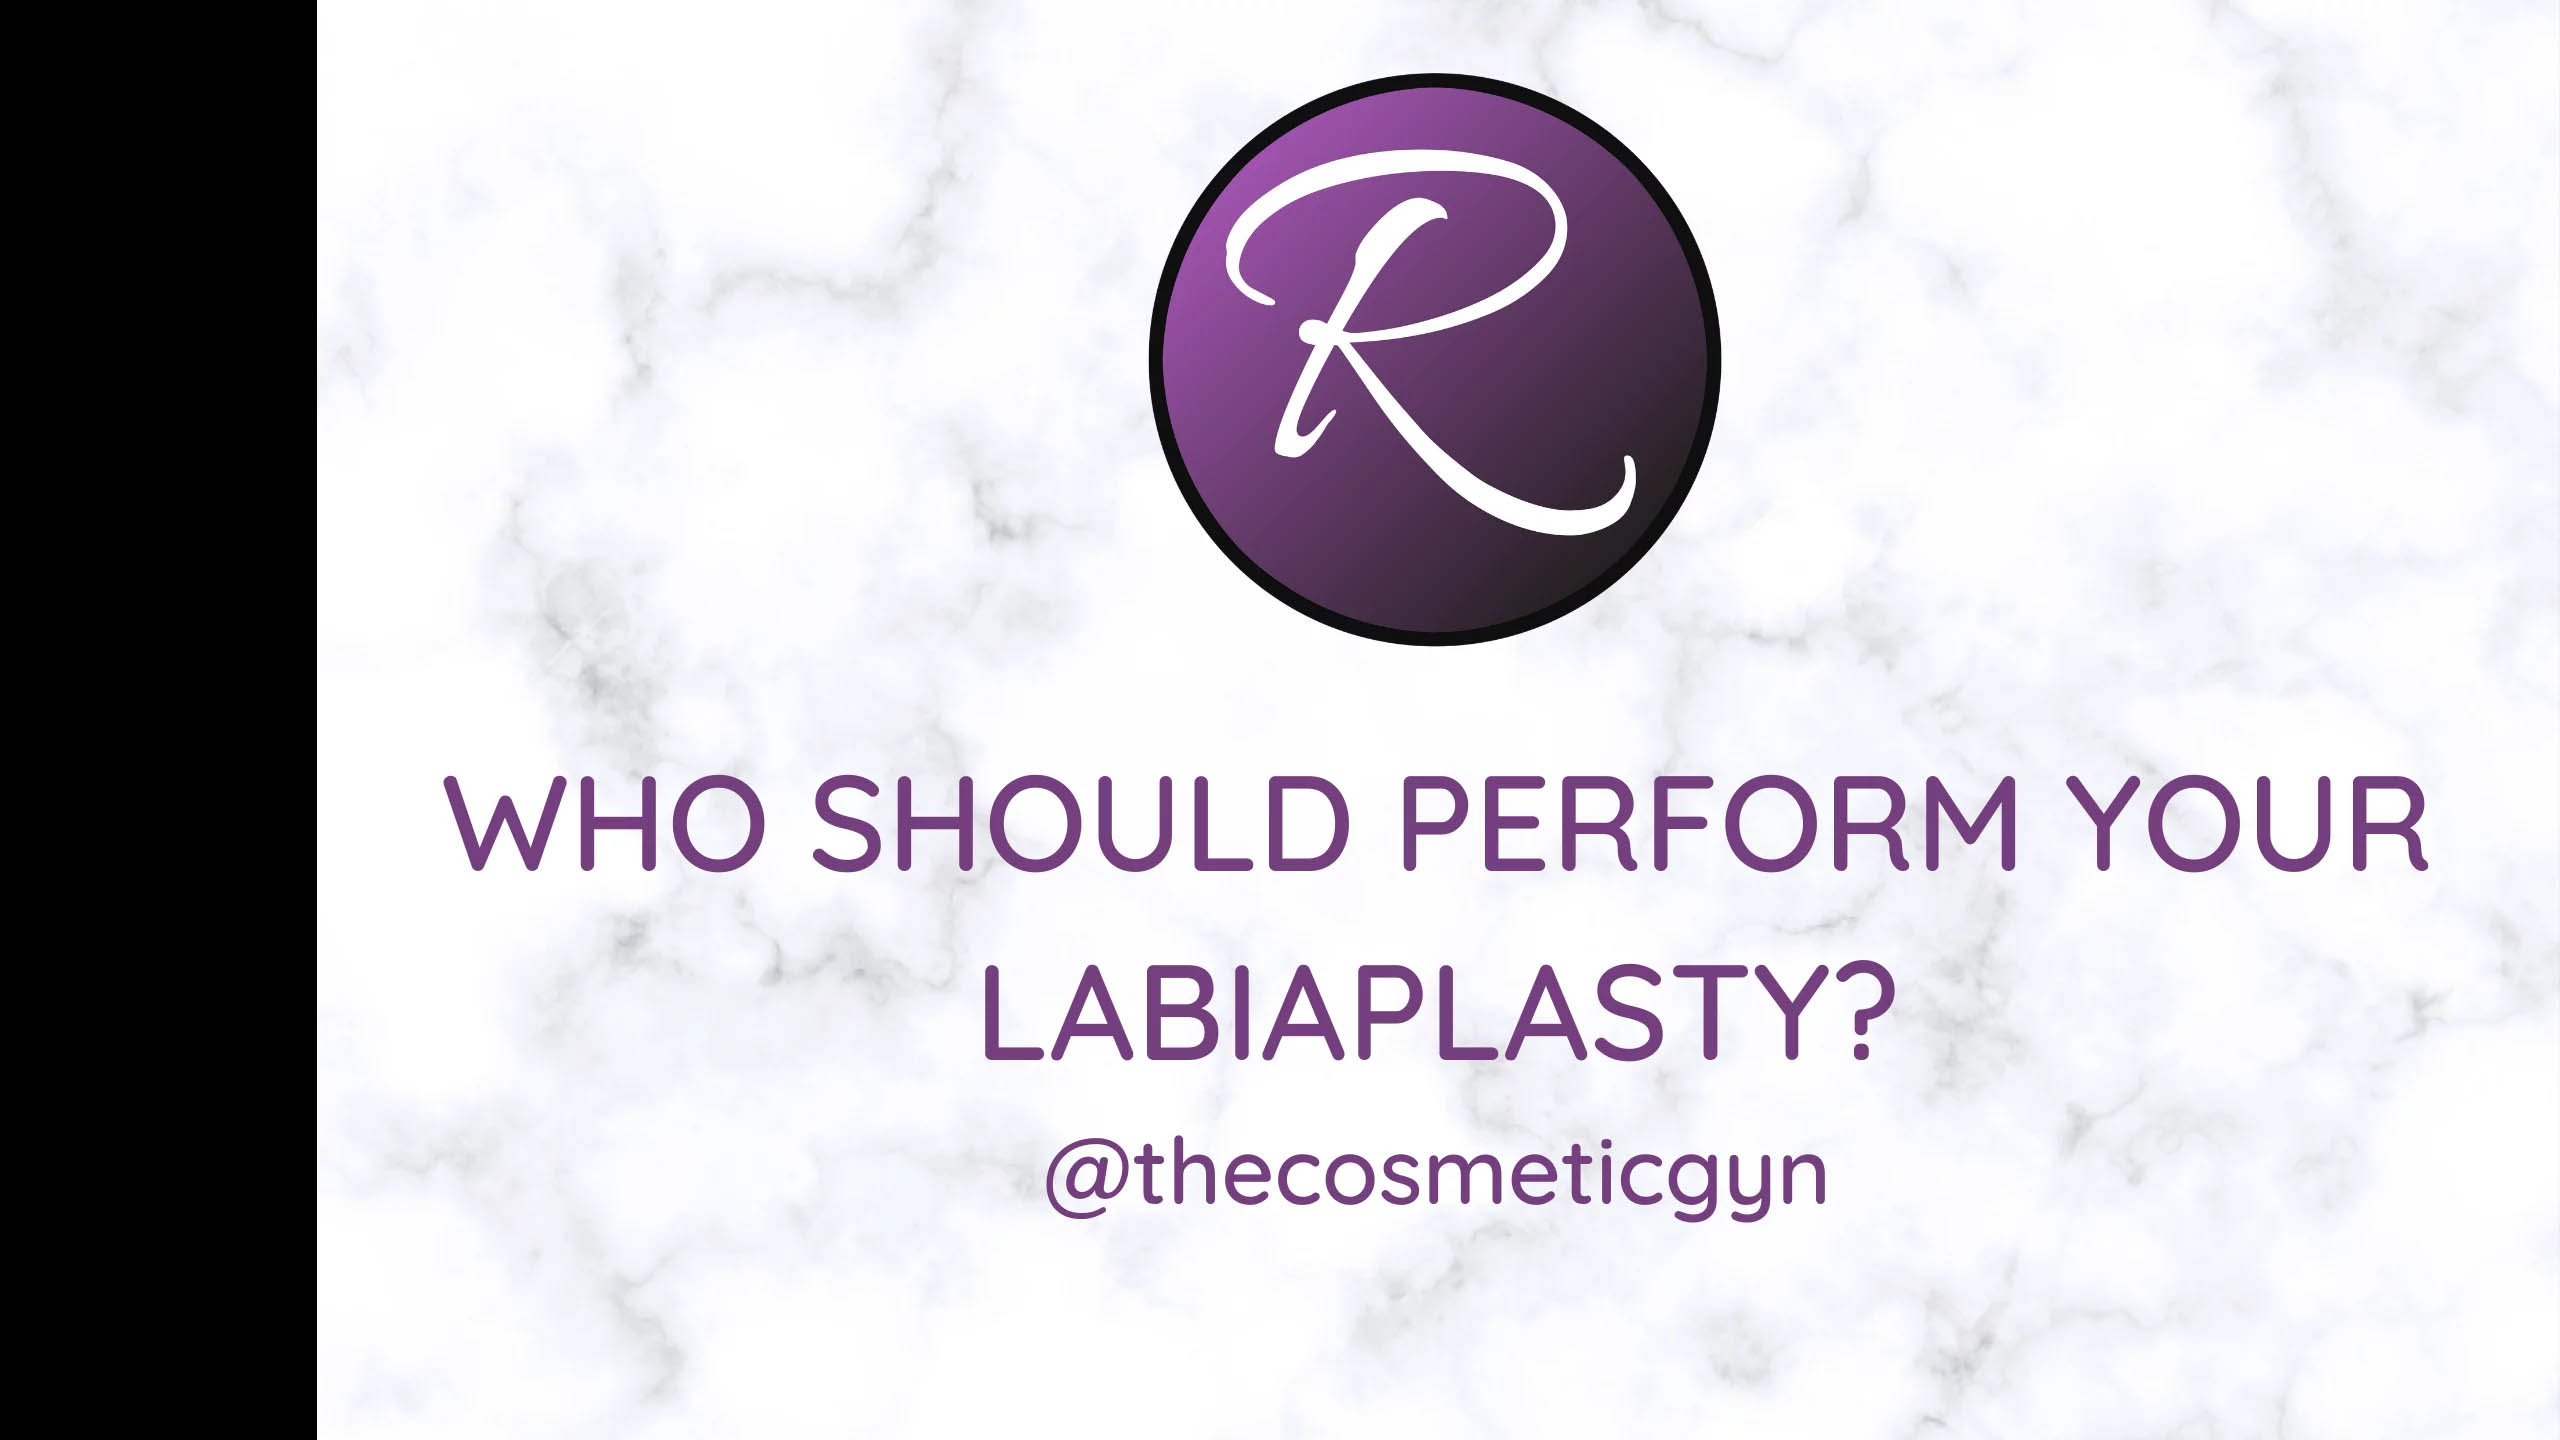 ¿Quién debe realizar la labioplastia?